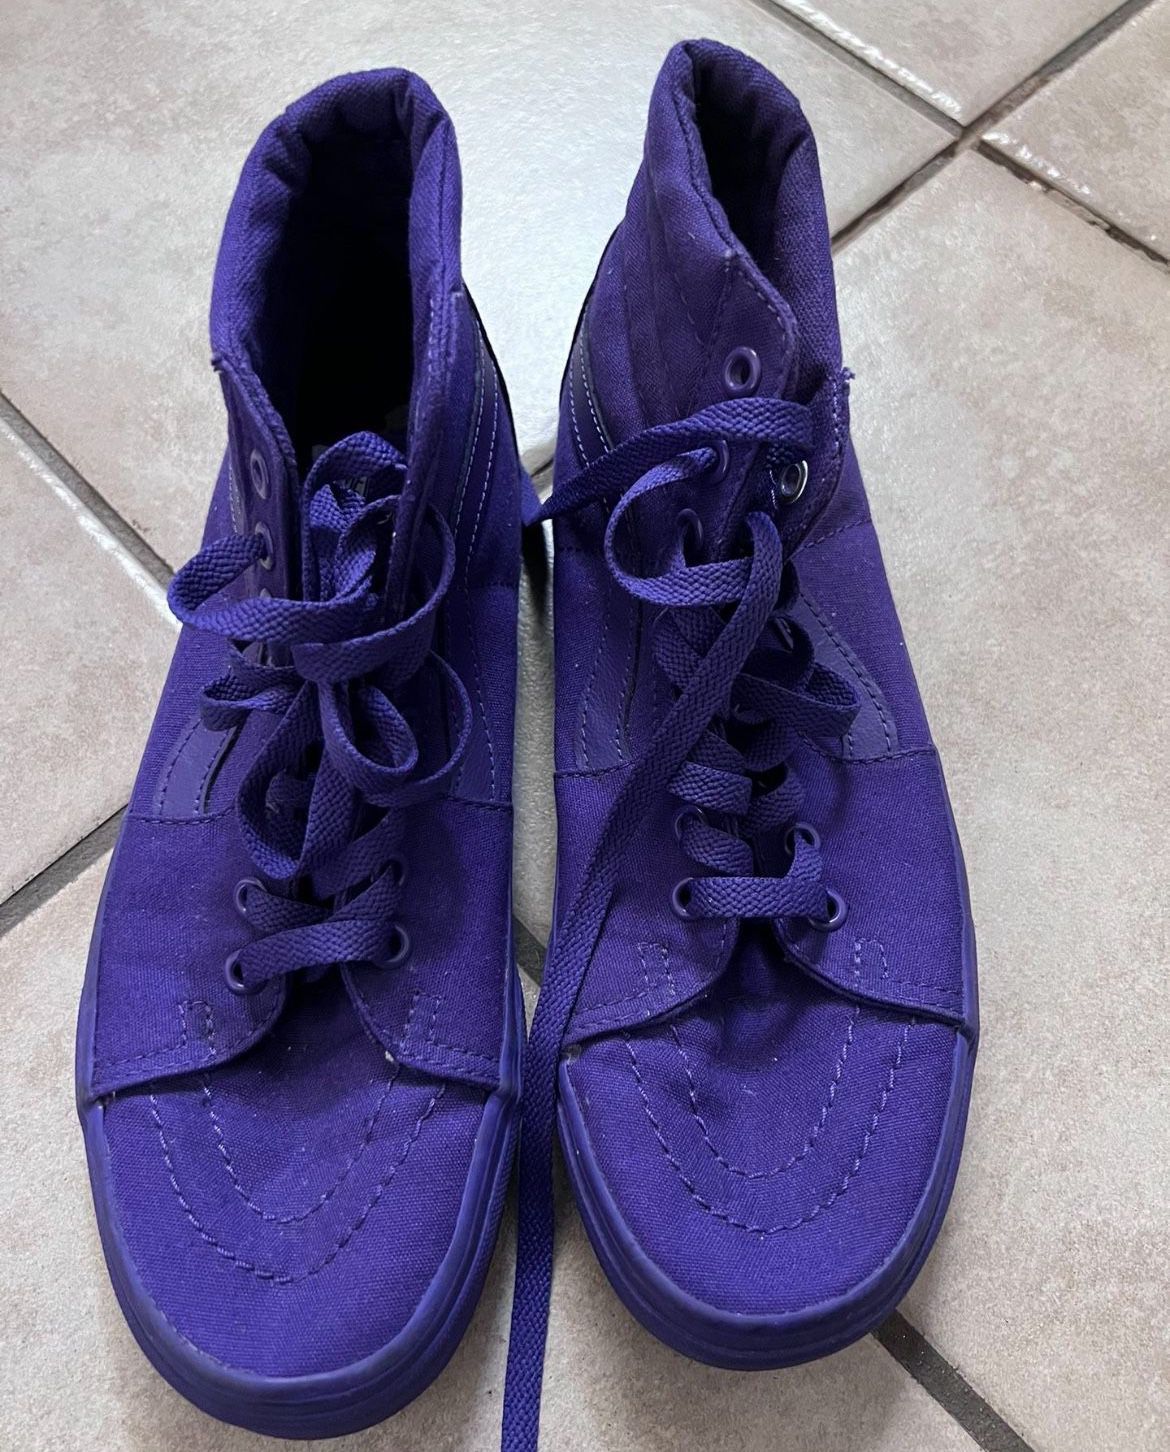 Purple Vans Size 8.5